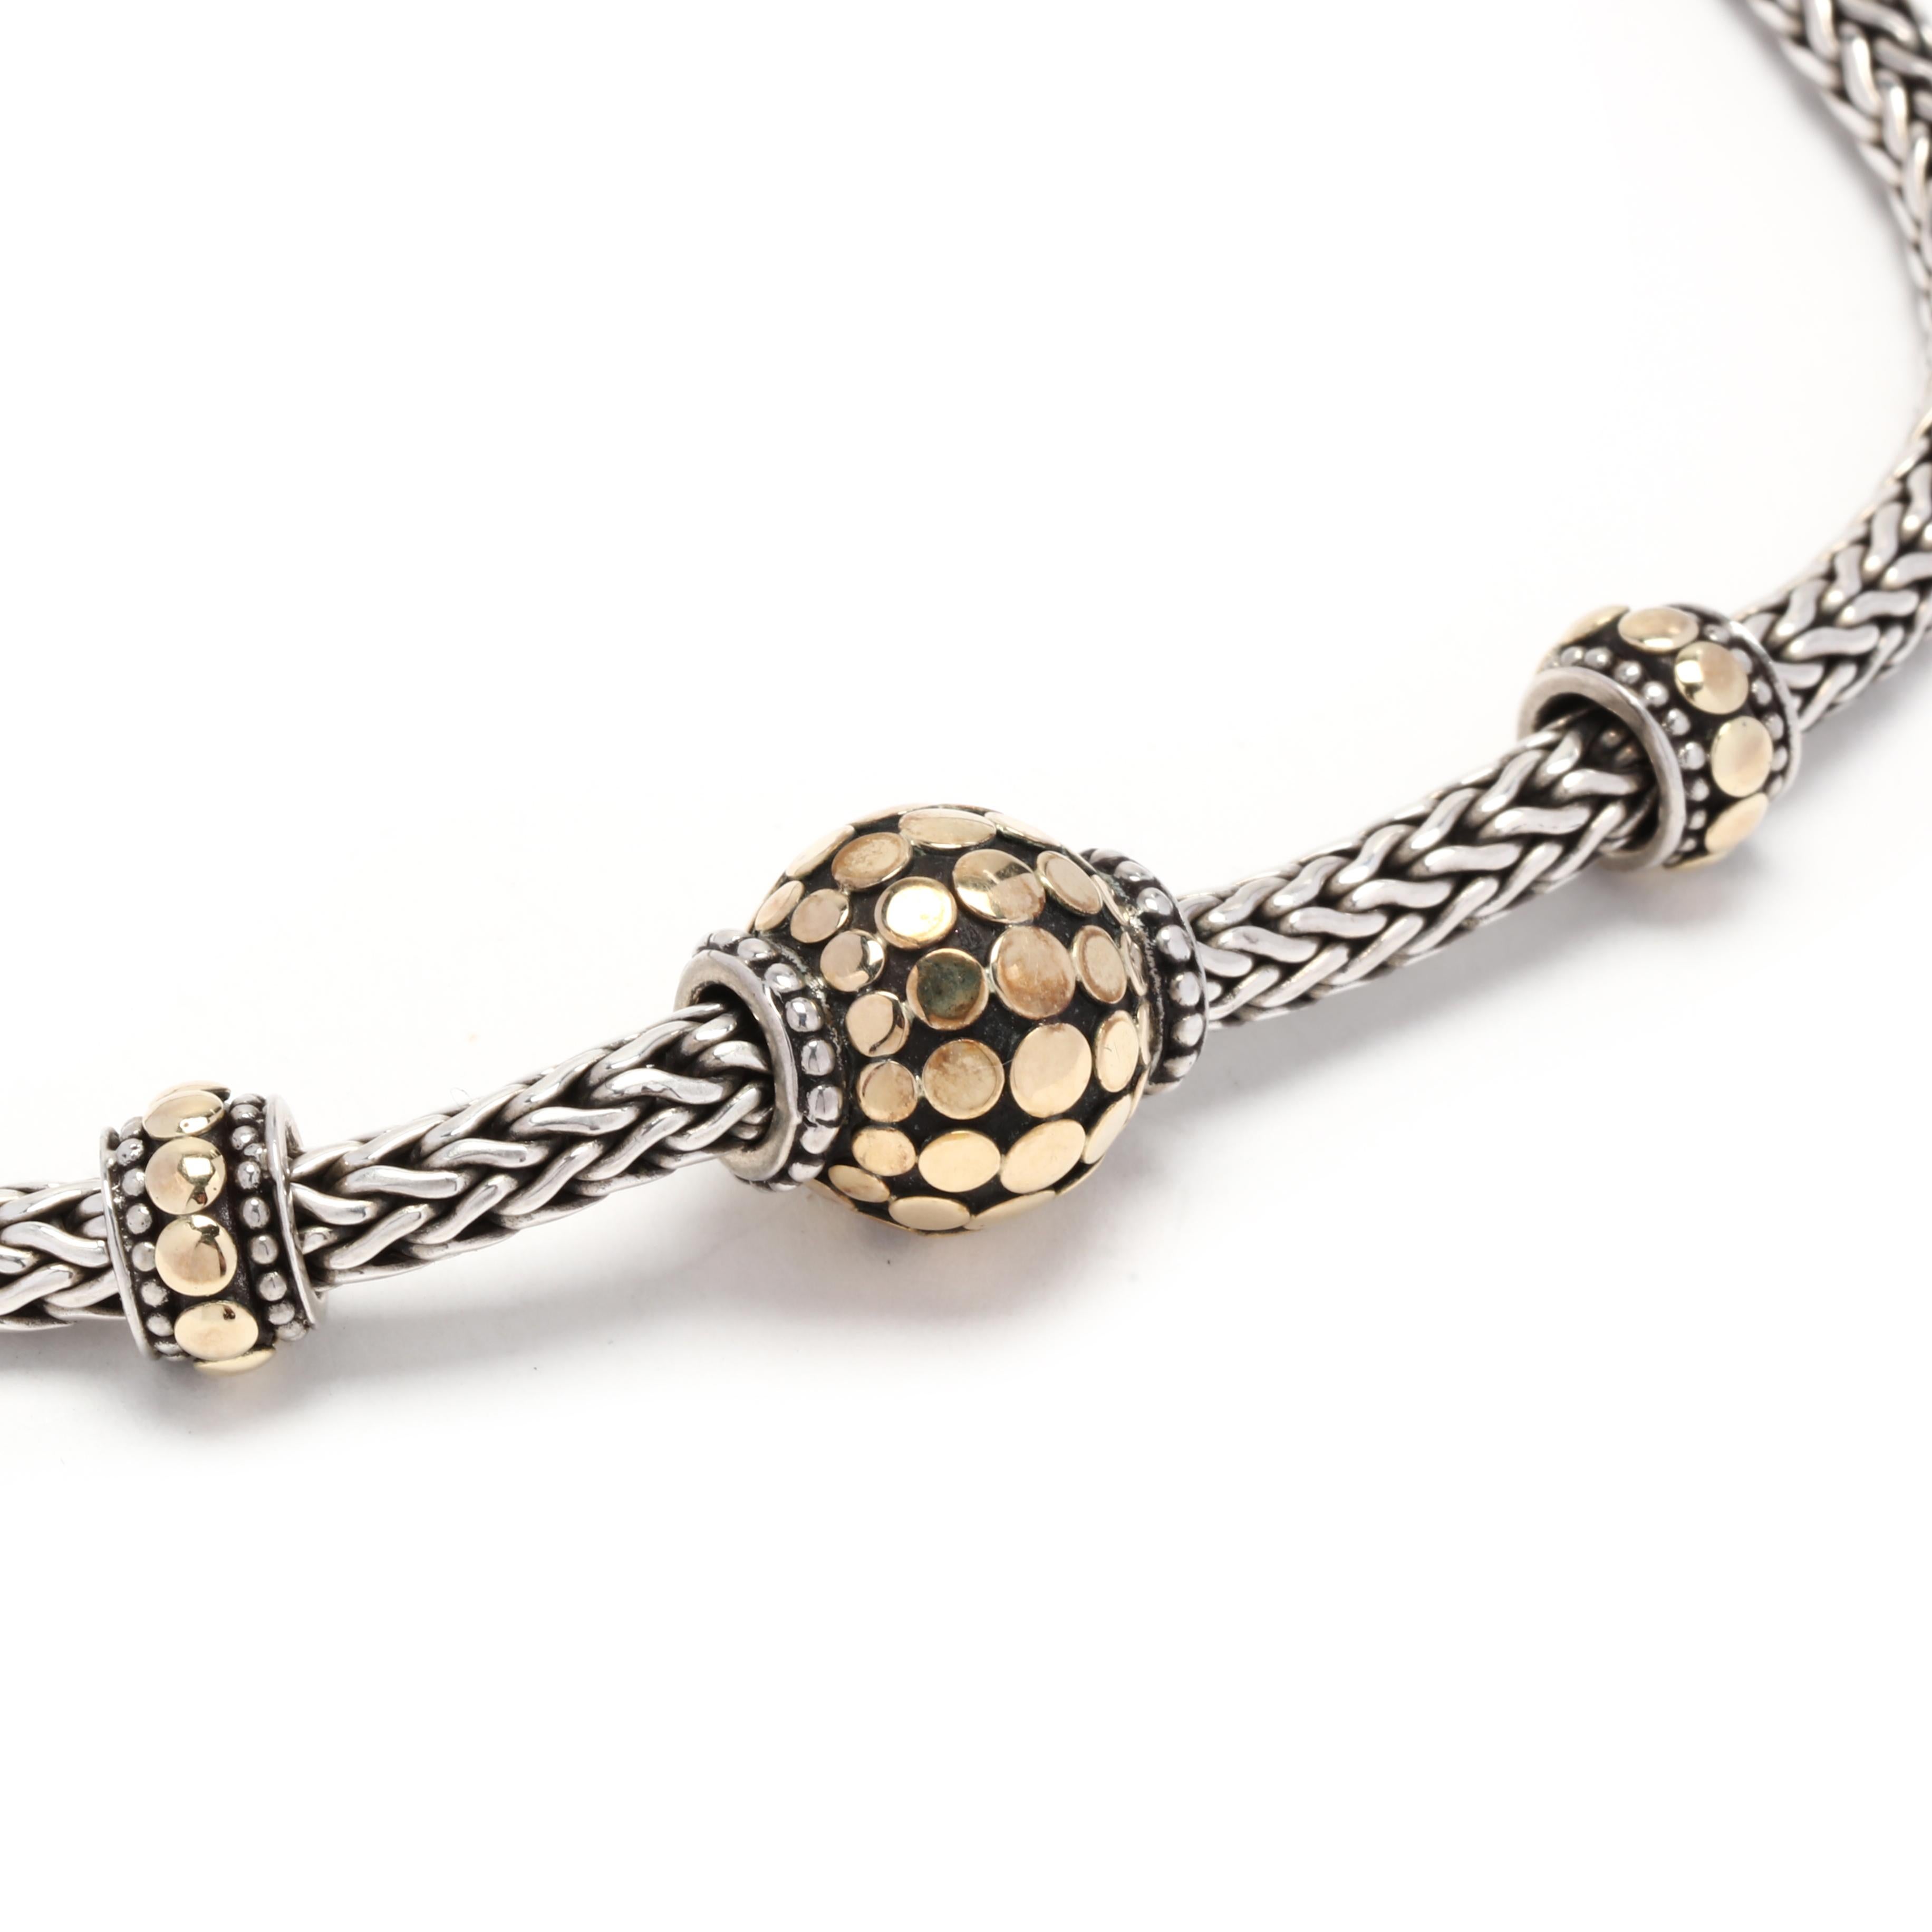 Diese John Hardy Dot Charm Halskette ist ein schönes und vielseitiges Schmuckstück. Diese Halskette ist aus einer Kombination von 18 Karat Gelbgold und Sterlingsilber gefertigt und bietet einen stilvollen und modernen Look.



Kettenlänge: 16